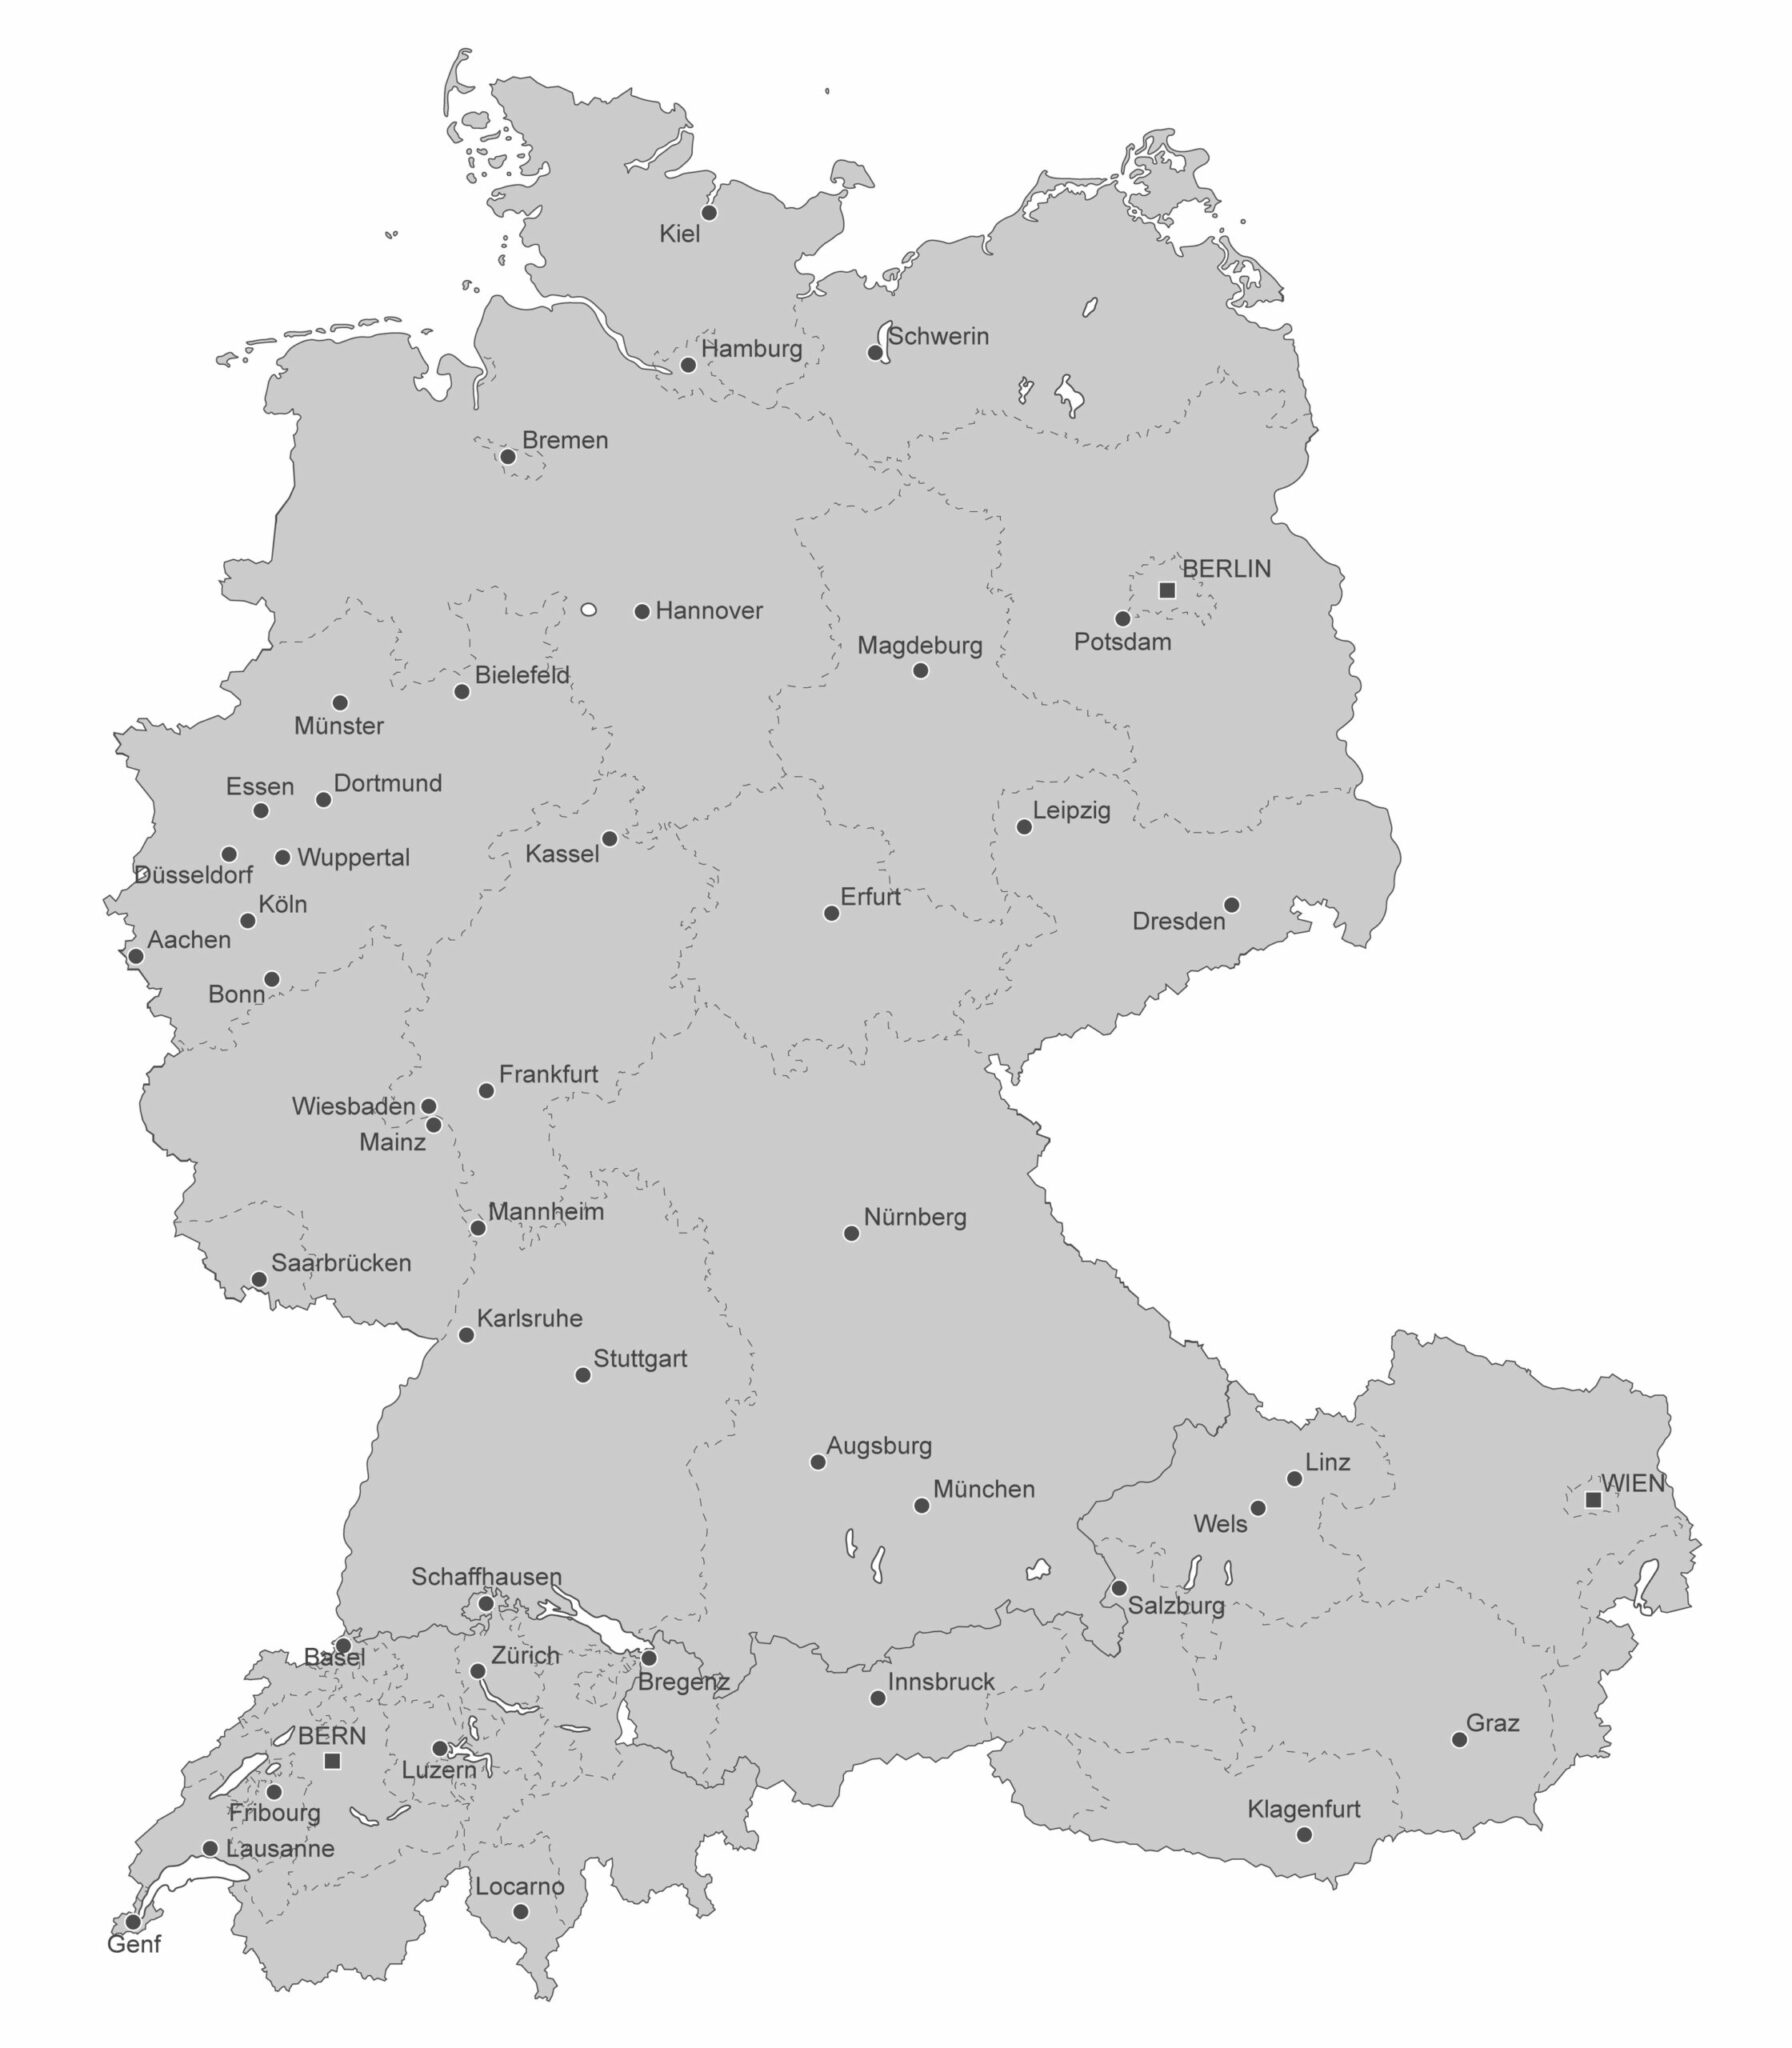 iStock 1127989981 Karte Deutschland Oesterreich Schweiz scaled 1